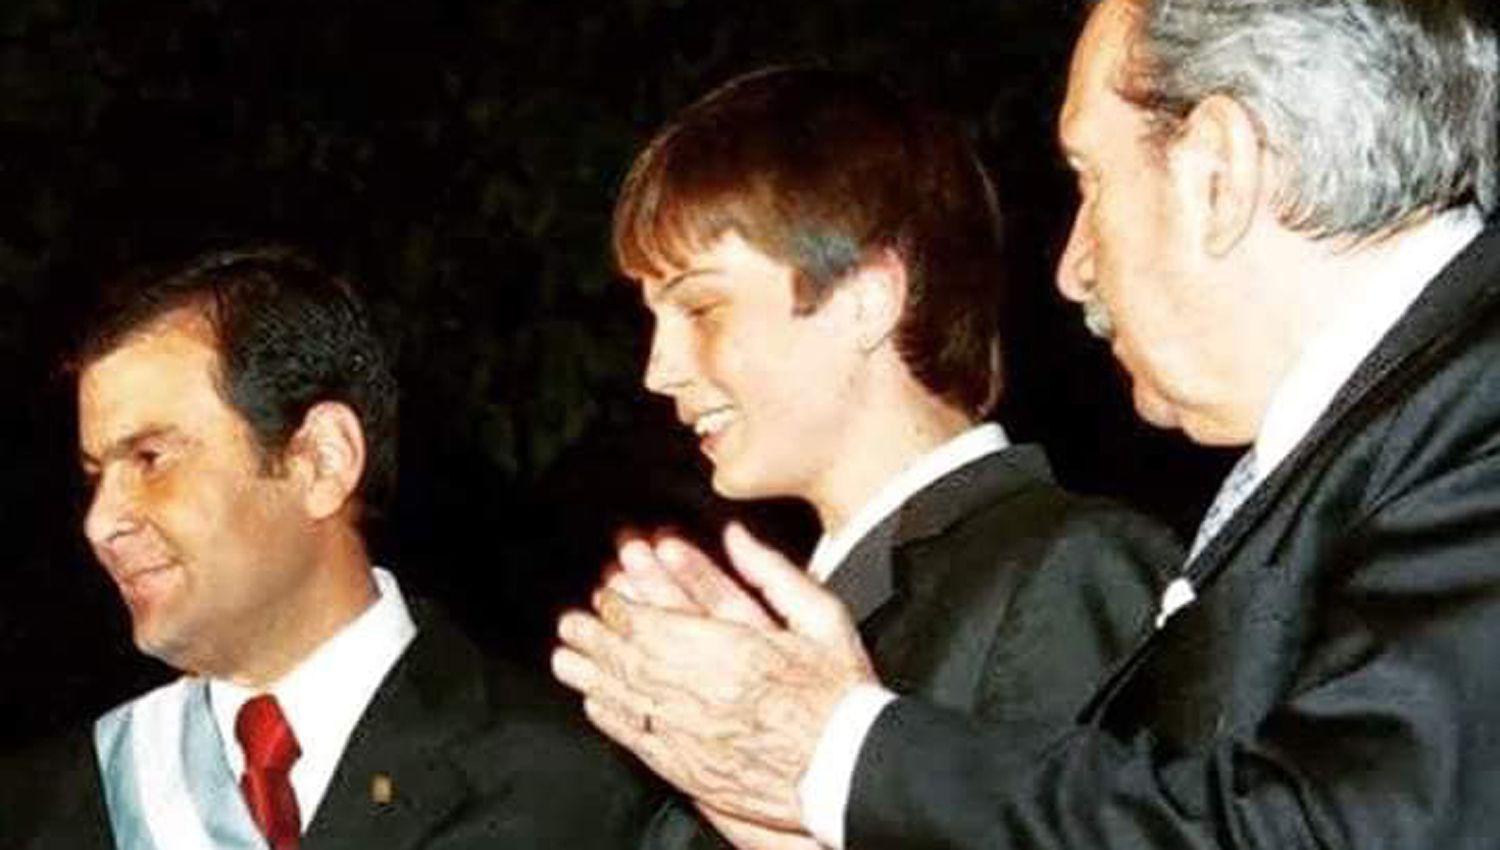 Zamora acompañó su posteo en las redes con una foto del día
de la asunción el 23 de marzo de 2005 junto a su hijo Francisco y Alfonsín